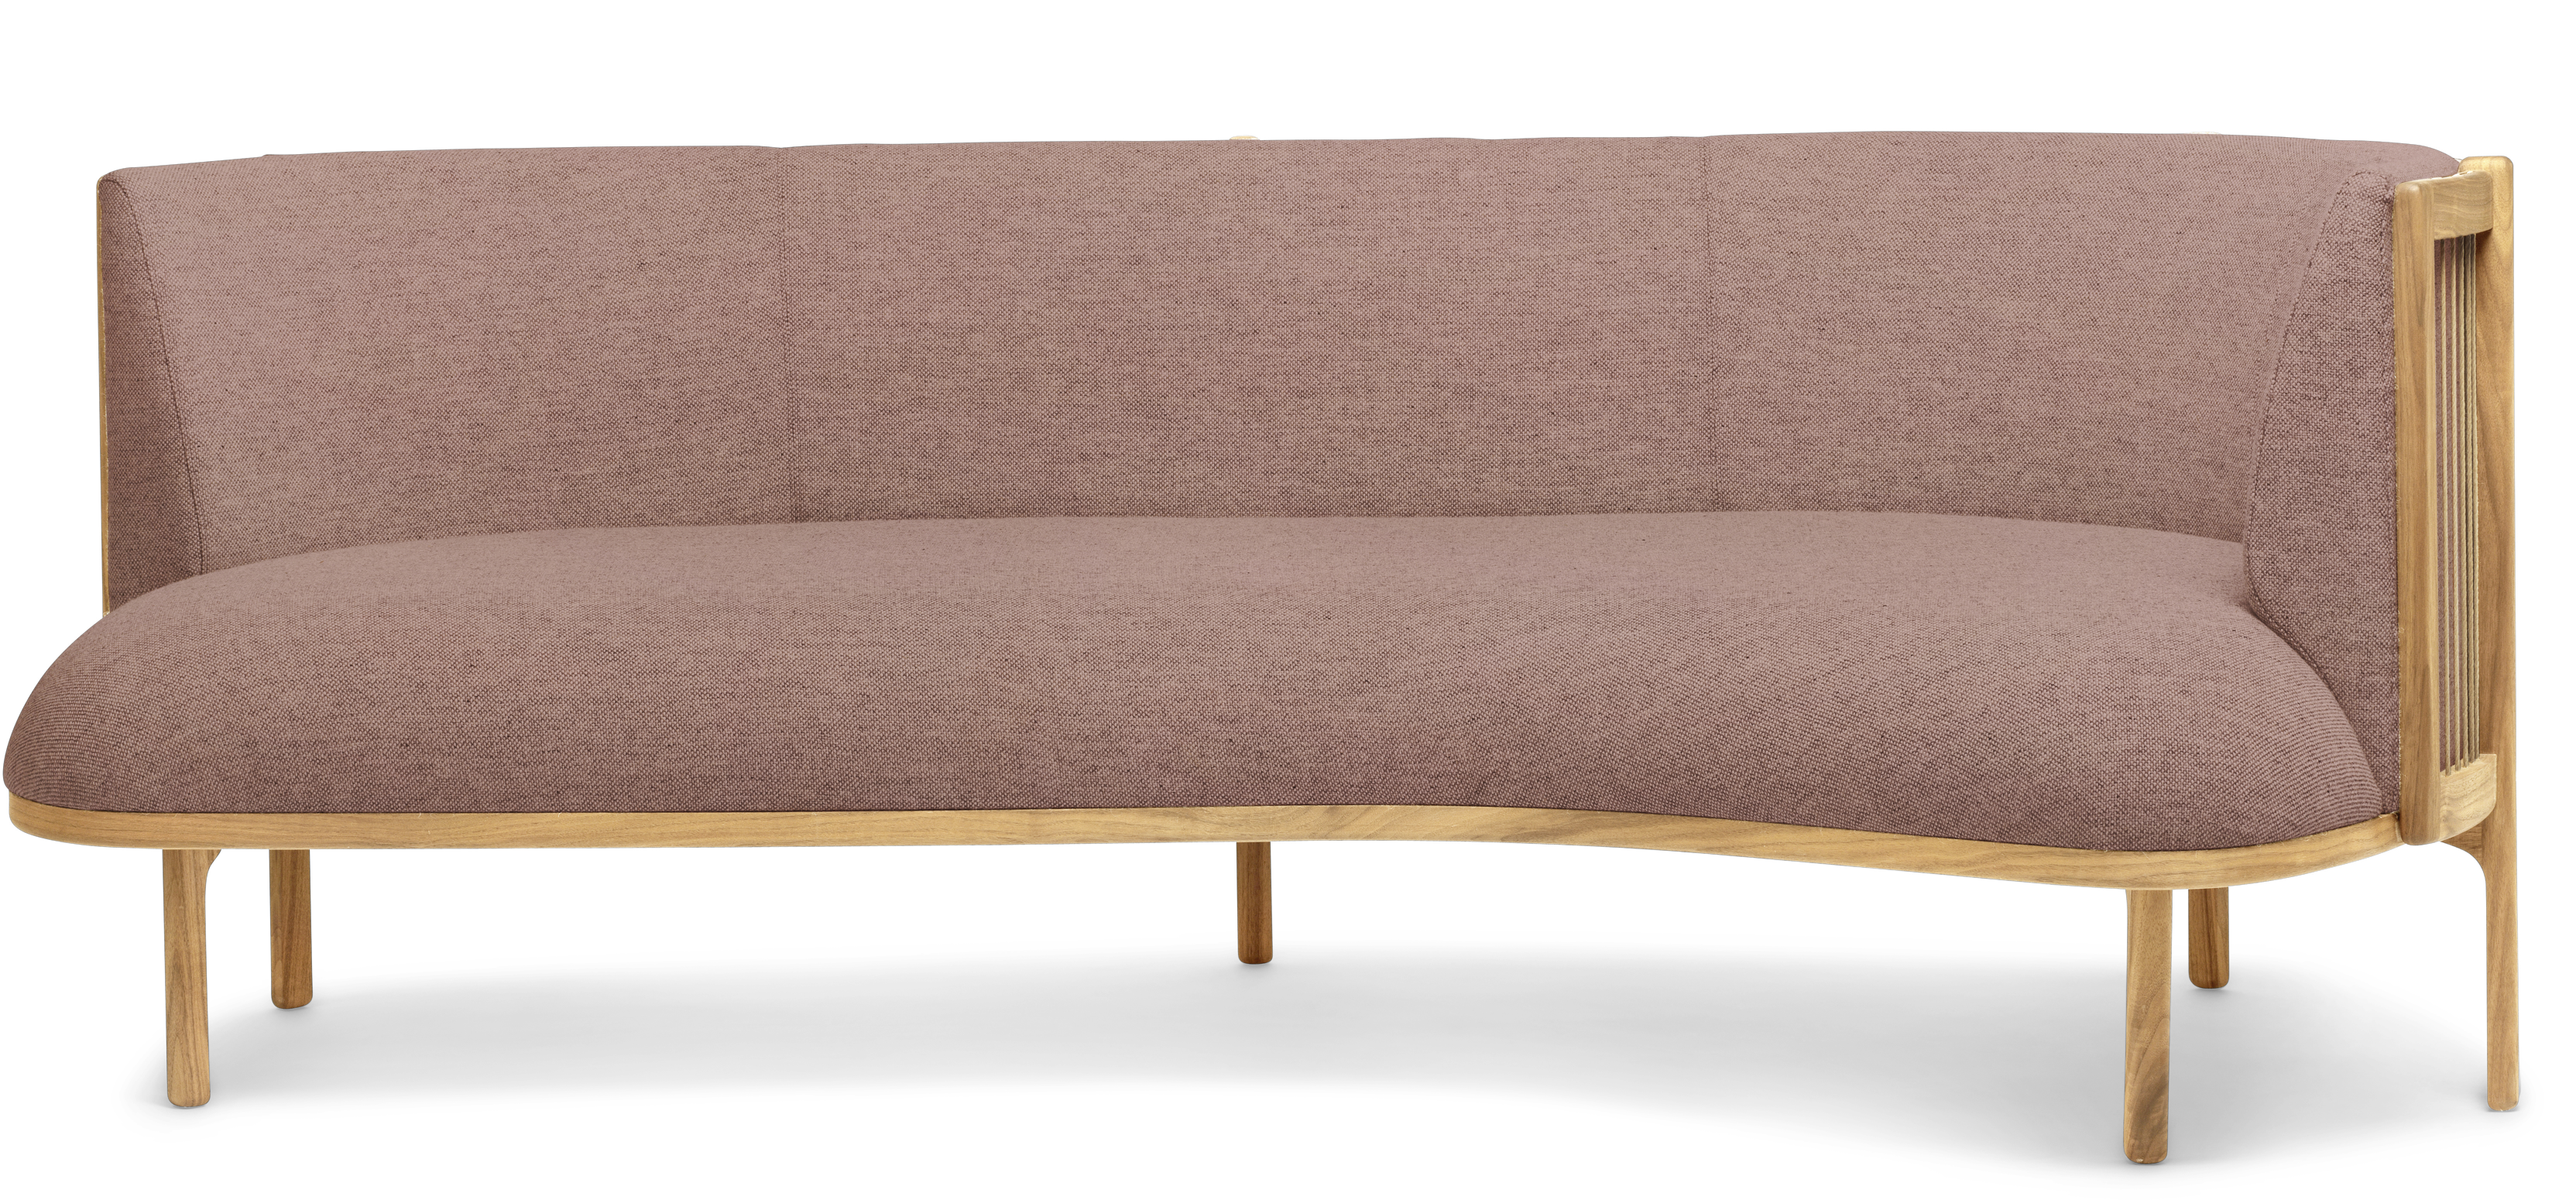 Product Image RF 1903 R Sideways Sofa